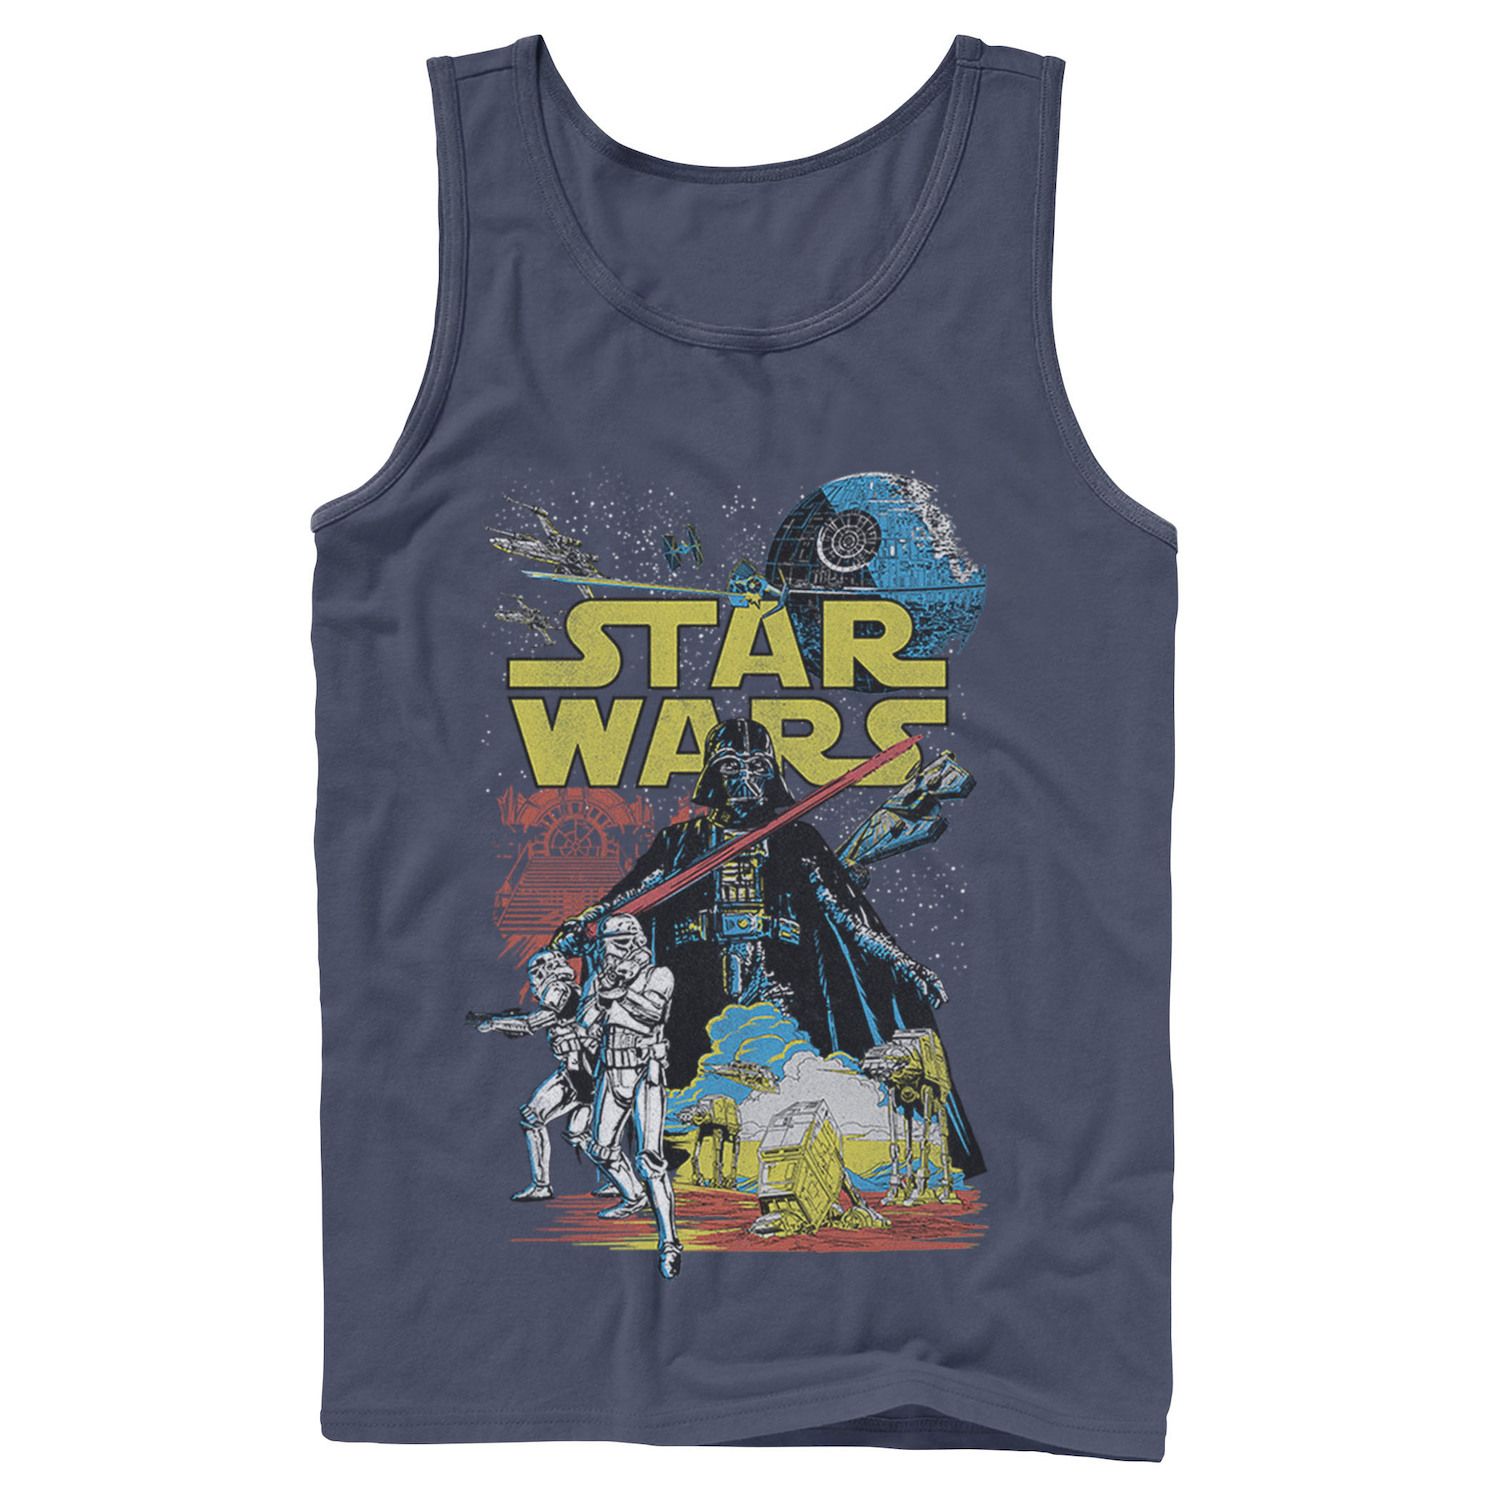 Мужская классическая майка с плакатом Star Wars Rebel мужская классическая футболка с графическим плакатом rebel star wars светло синий